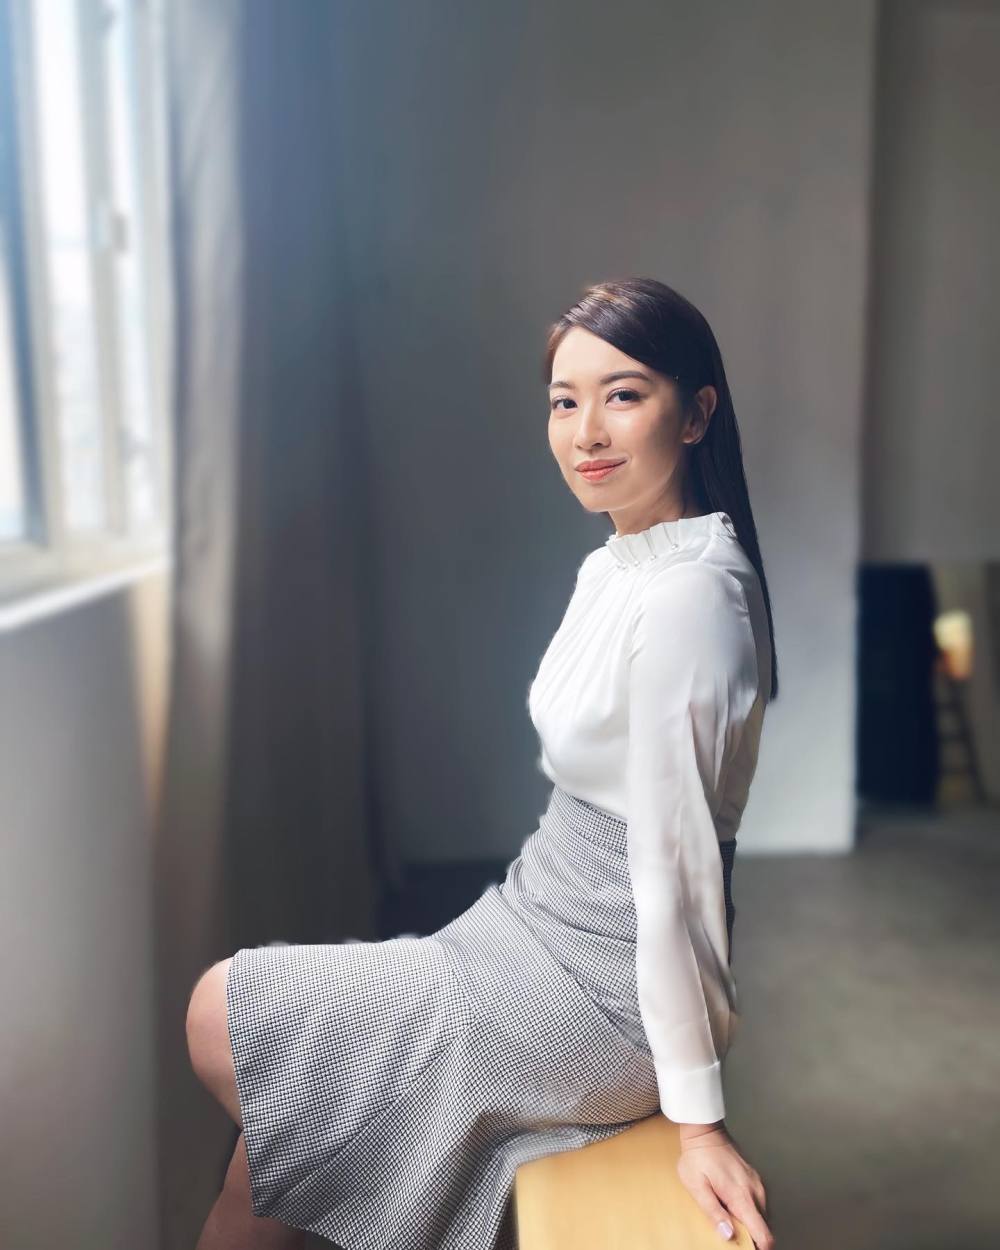 朱千雪 Sexy and Hottest Photos , Latest Pics